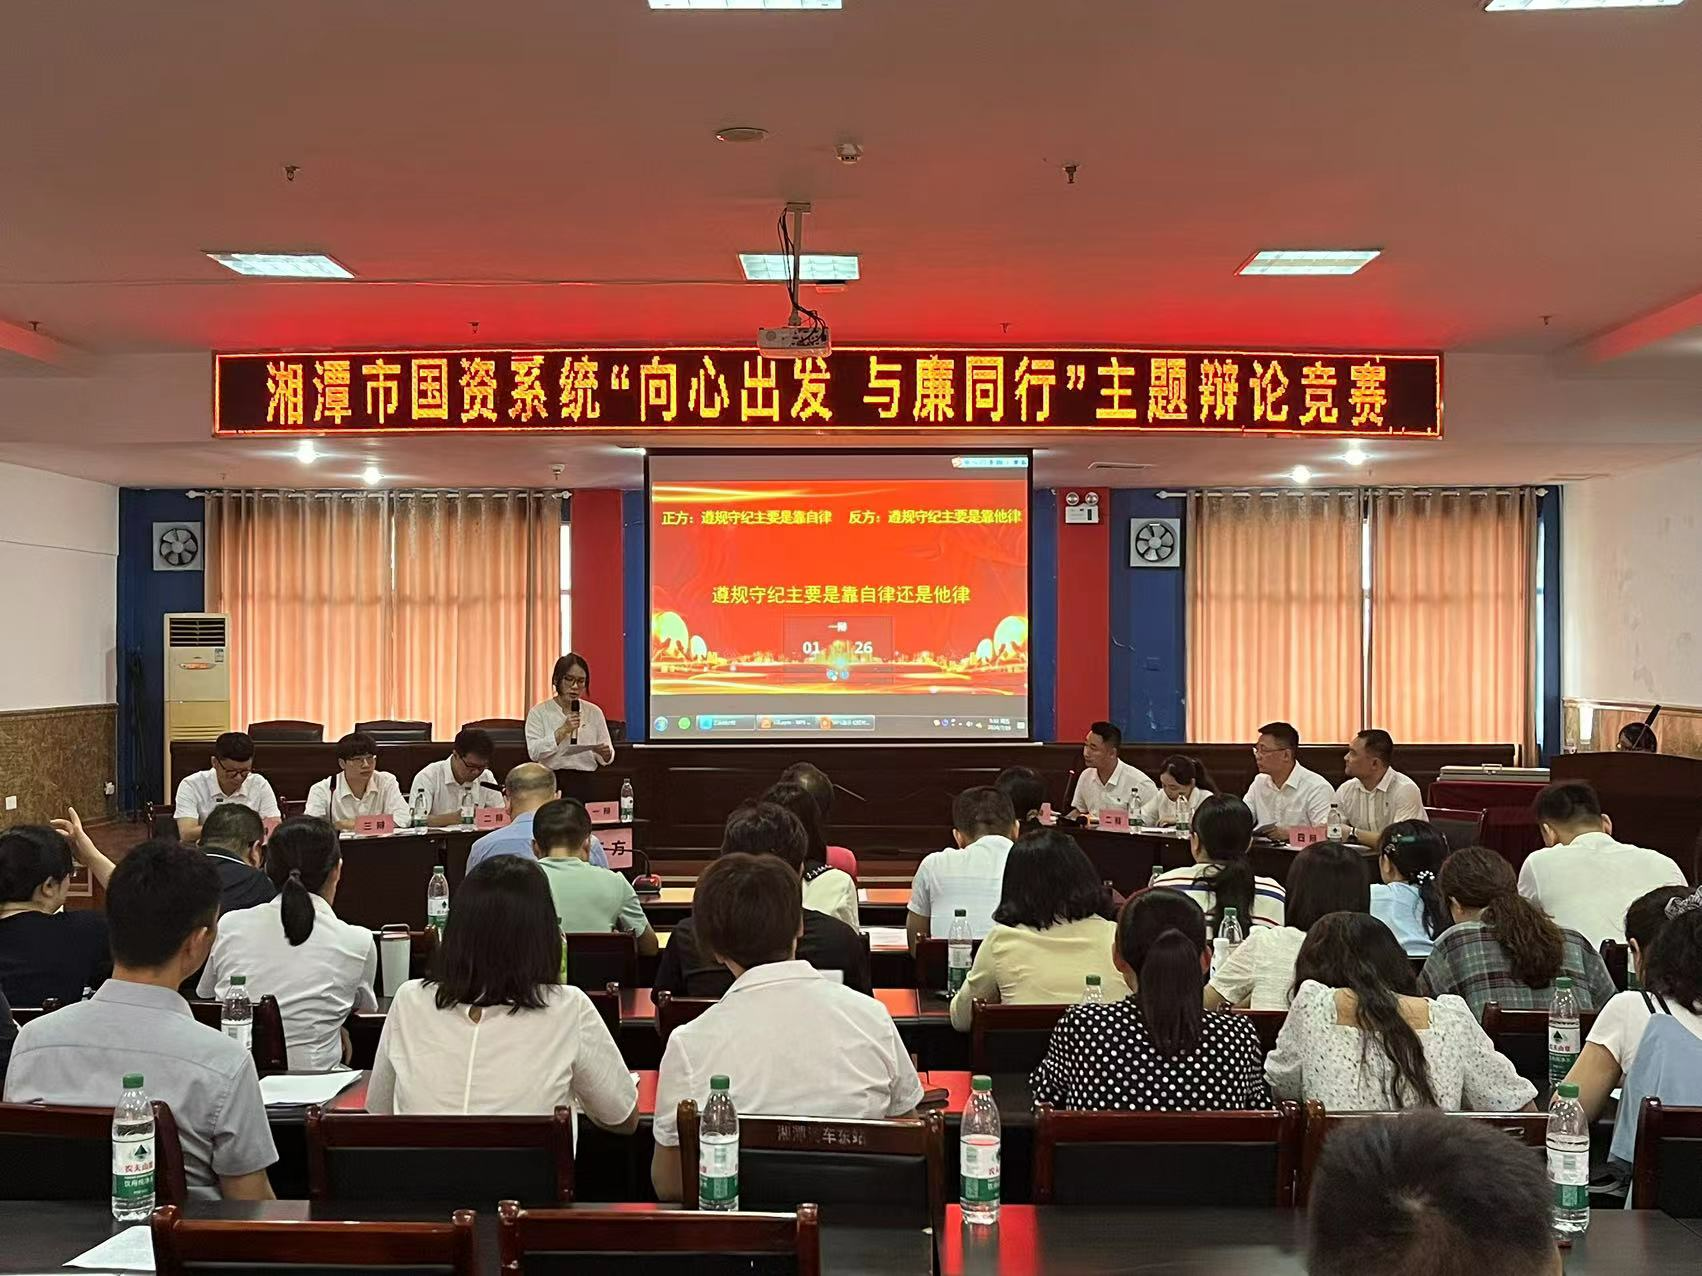 湘潭市国资系统“向心出发 与廉同行”主题辩论竞赛结束